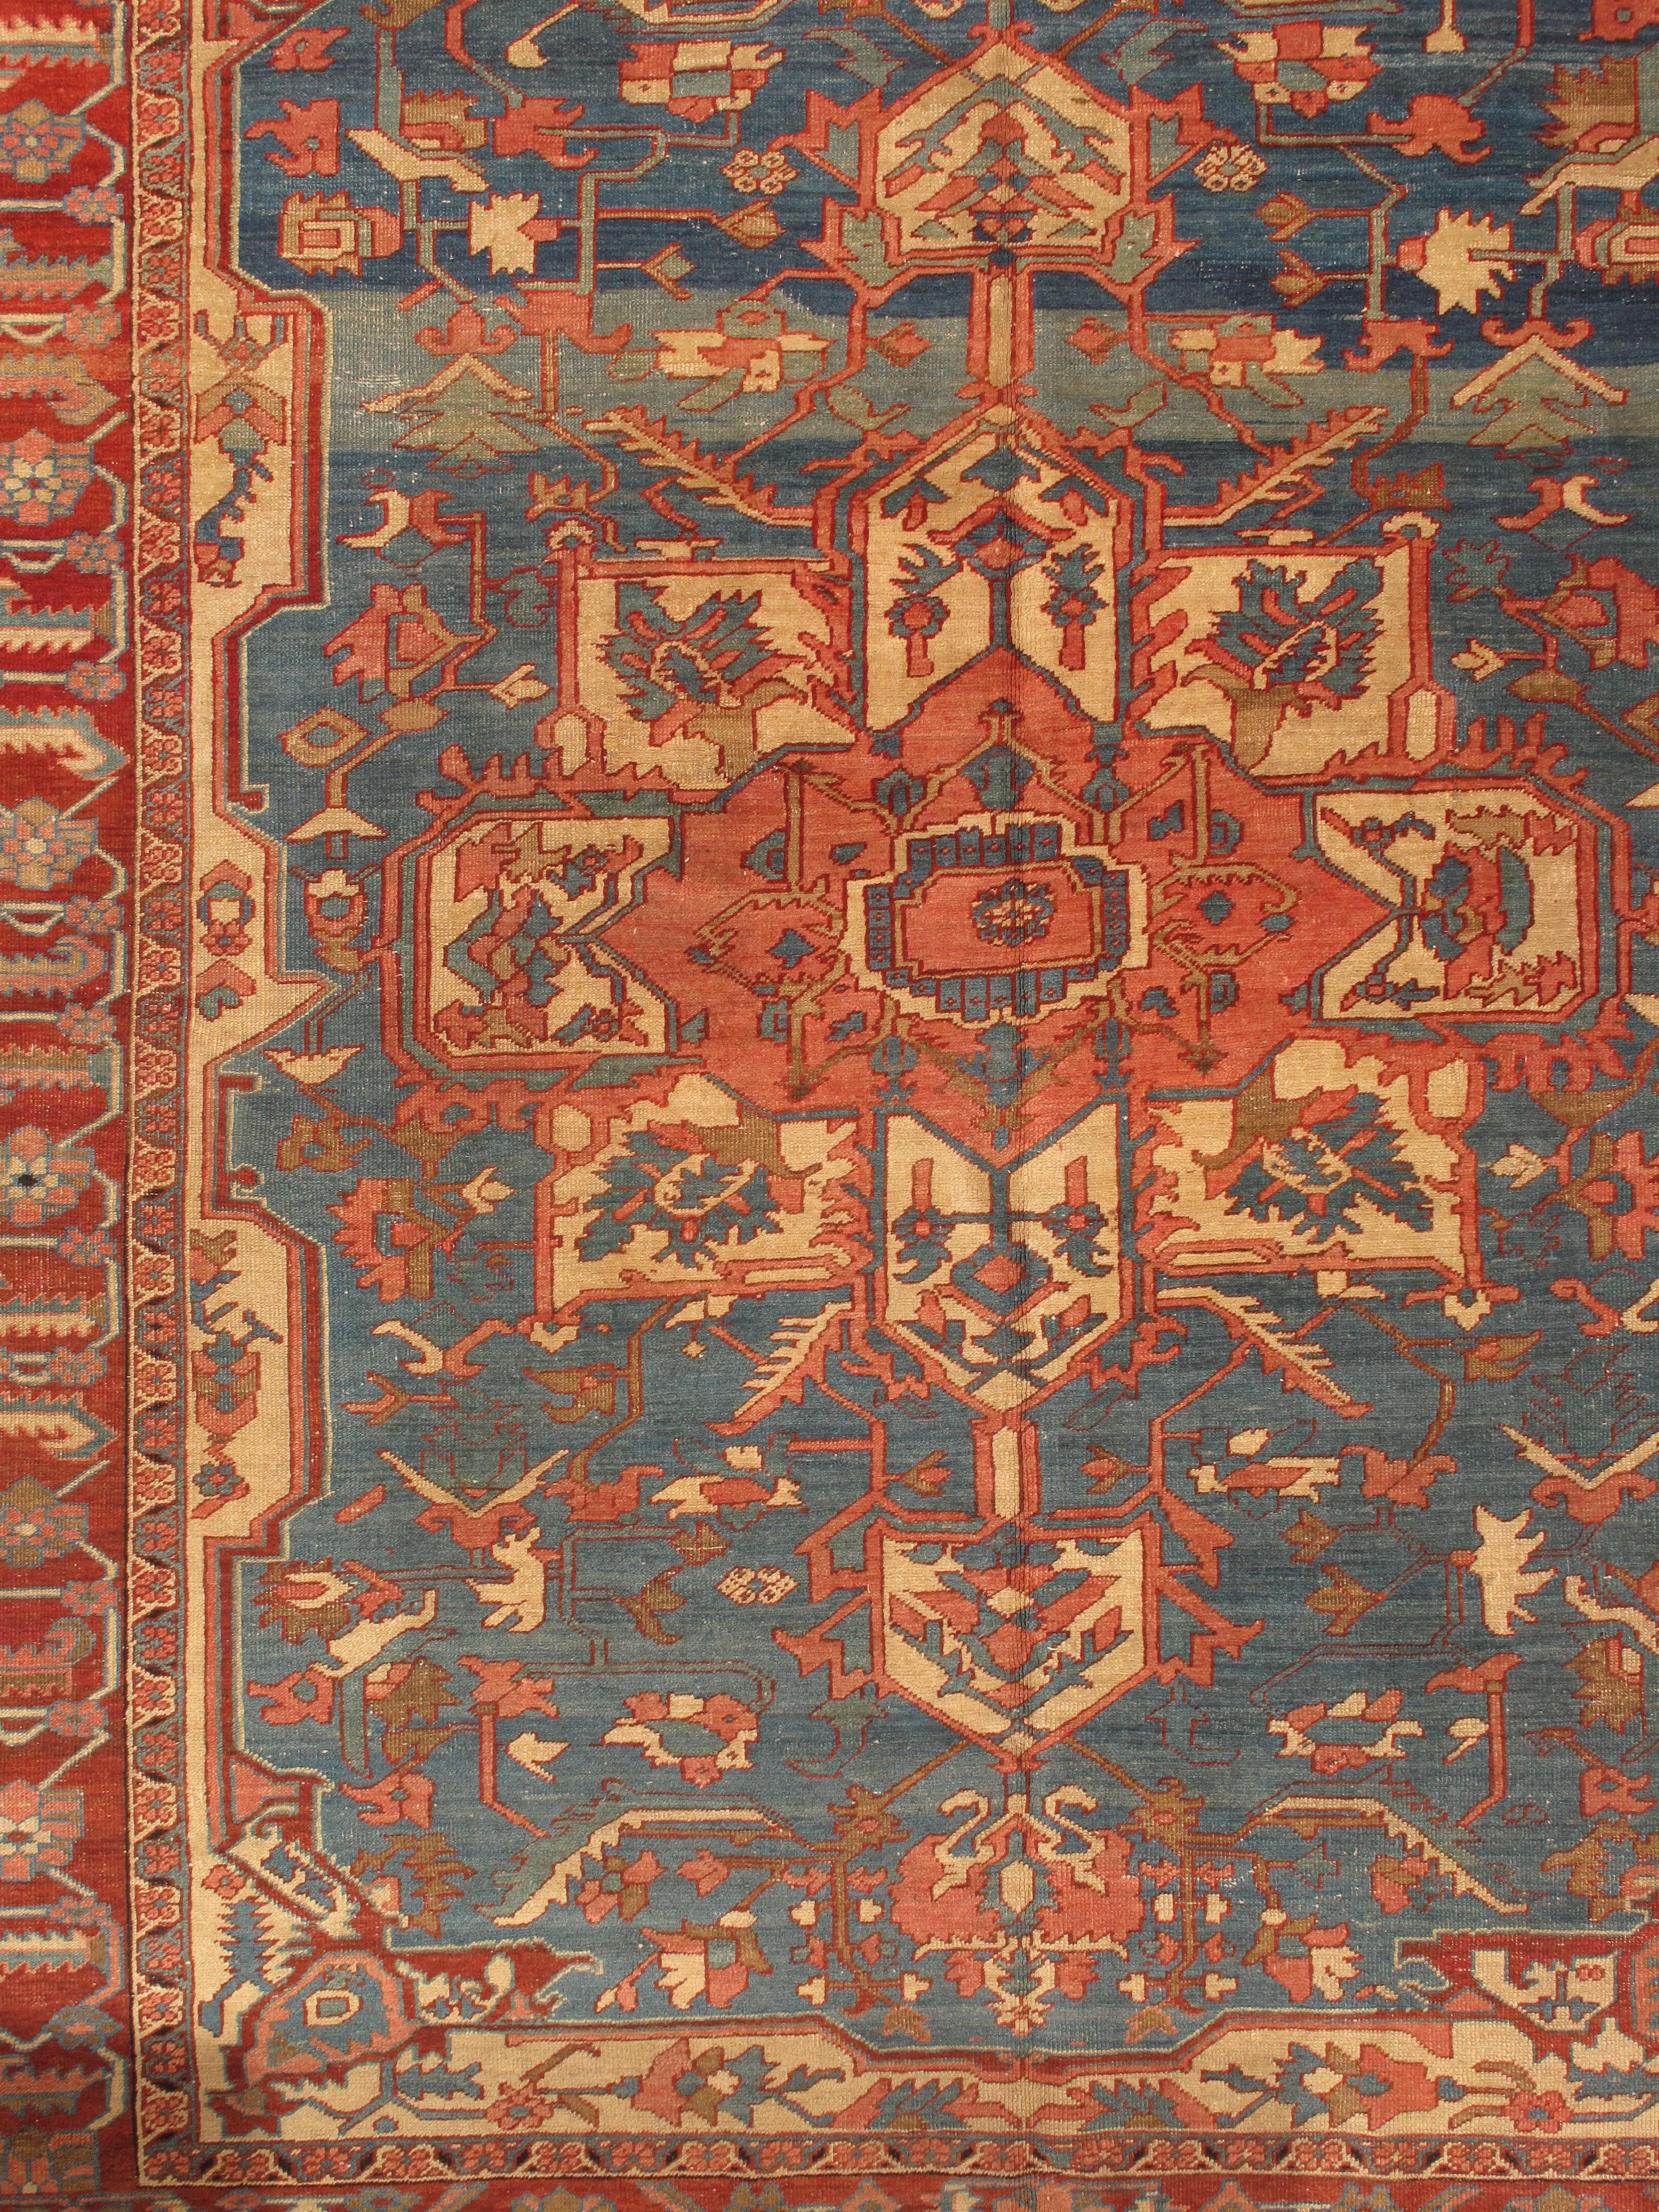 Antique Persian Serapi Carpet, Handmade Rug Light Blue, Ivory, Rusty Red For Sale 1